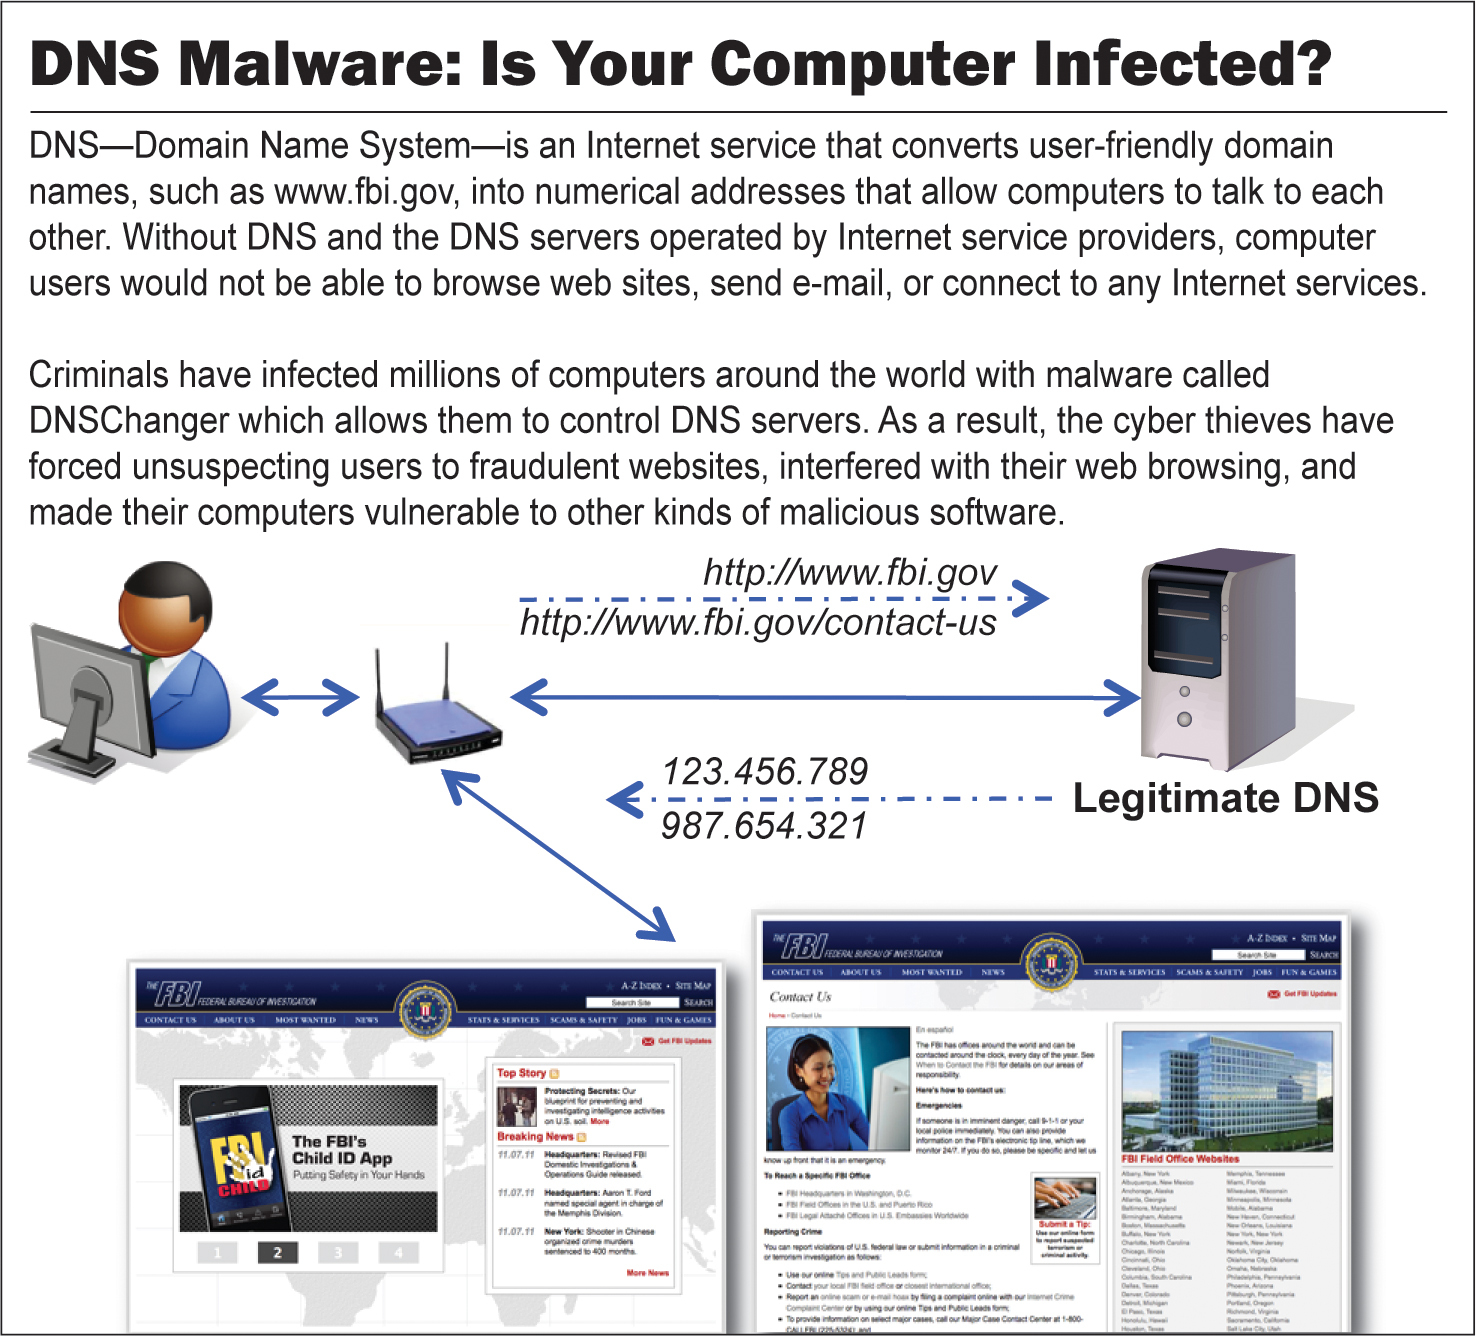 DNS Malware